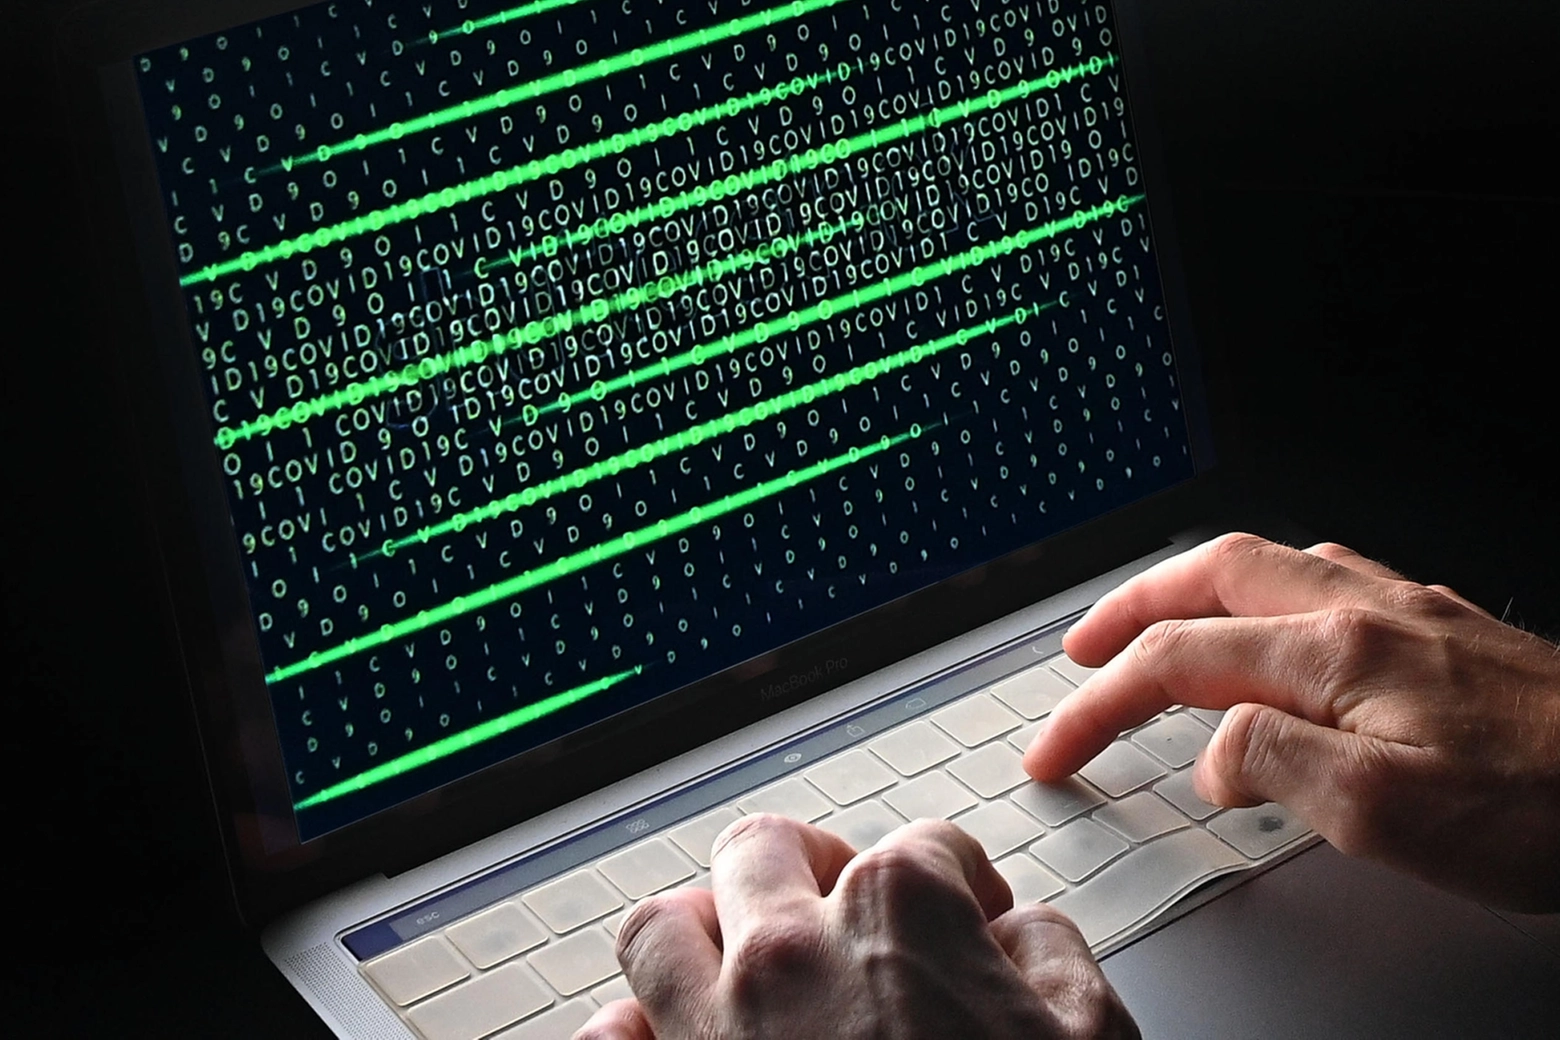 Attacco hacker all'Azienda ospedaliera di Verona